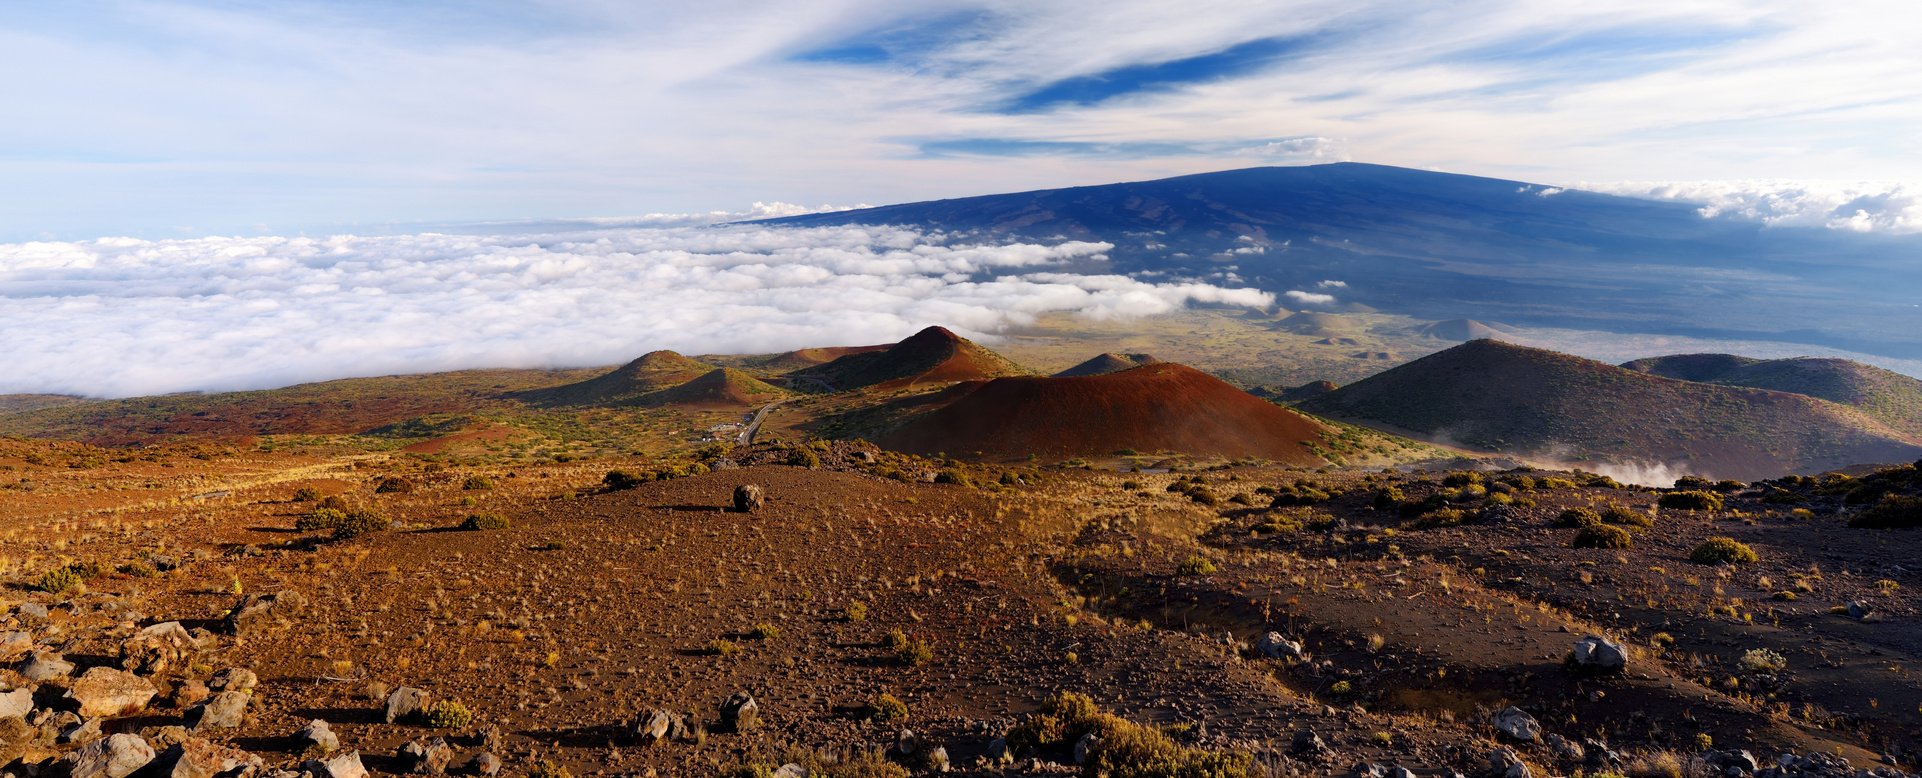 Breathtaking View of Mauna Loa Volcano on the Big Island of Hawaii